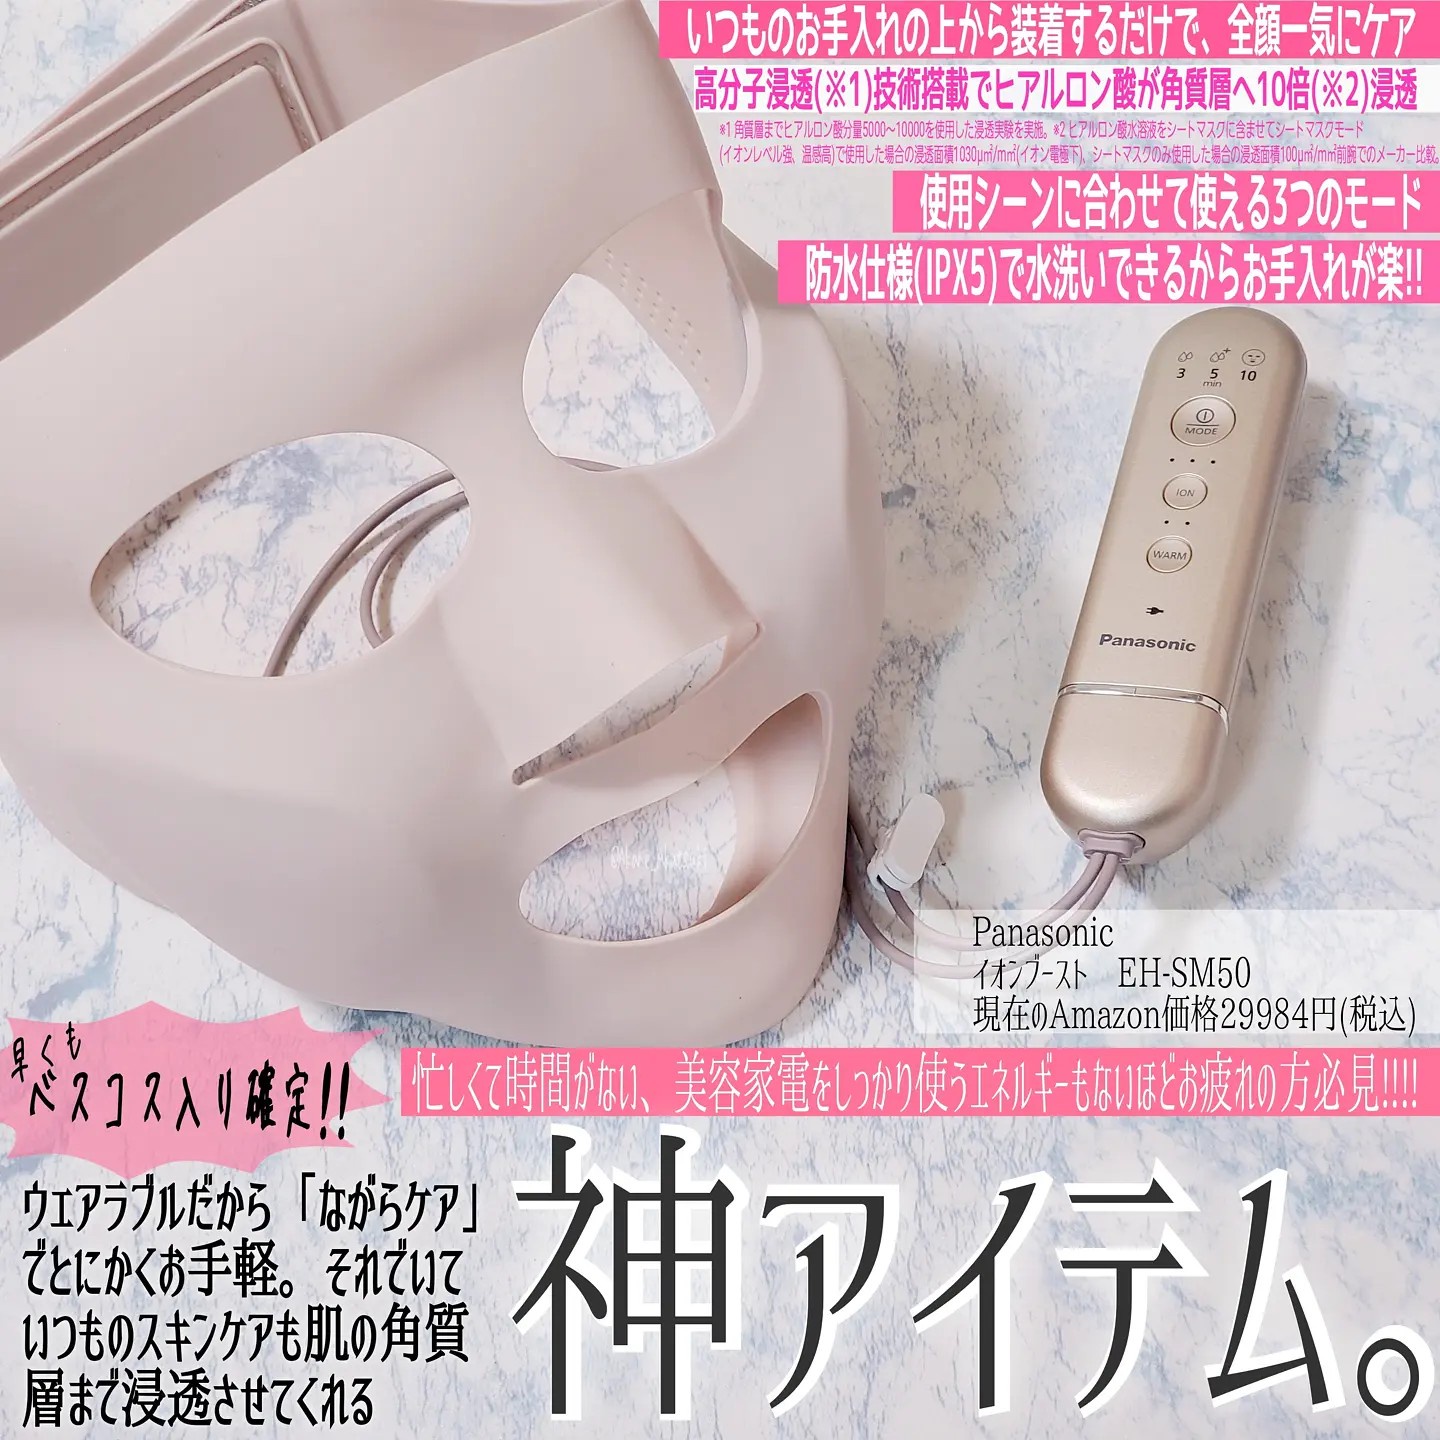 13599円 【日本製】 Panasonic マスク型美顔器